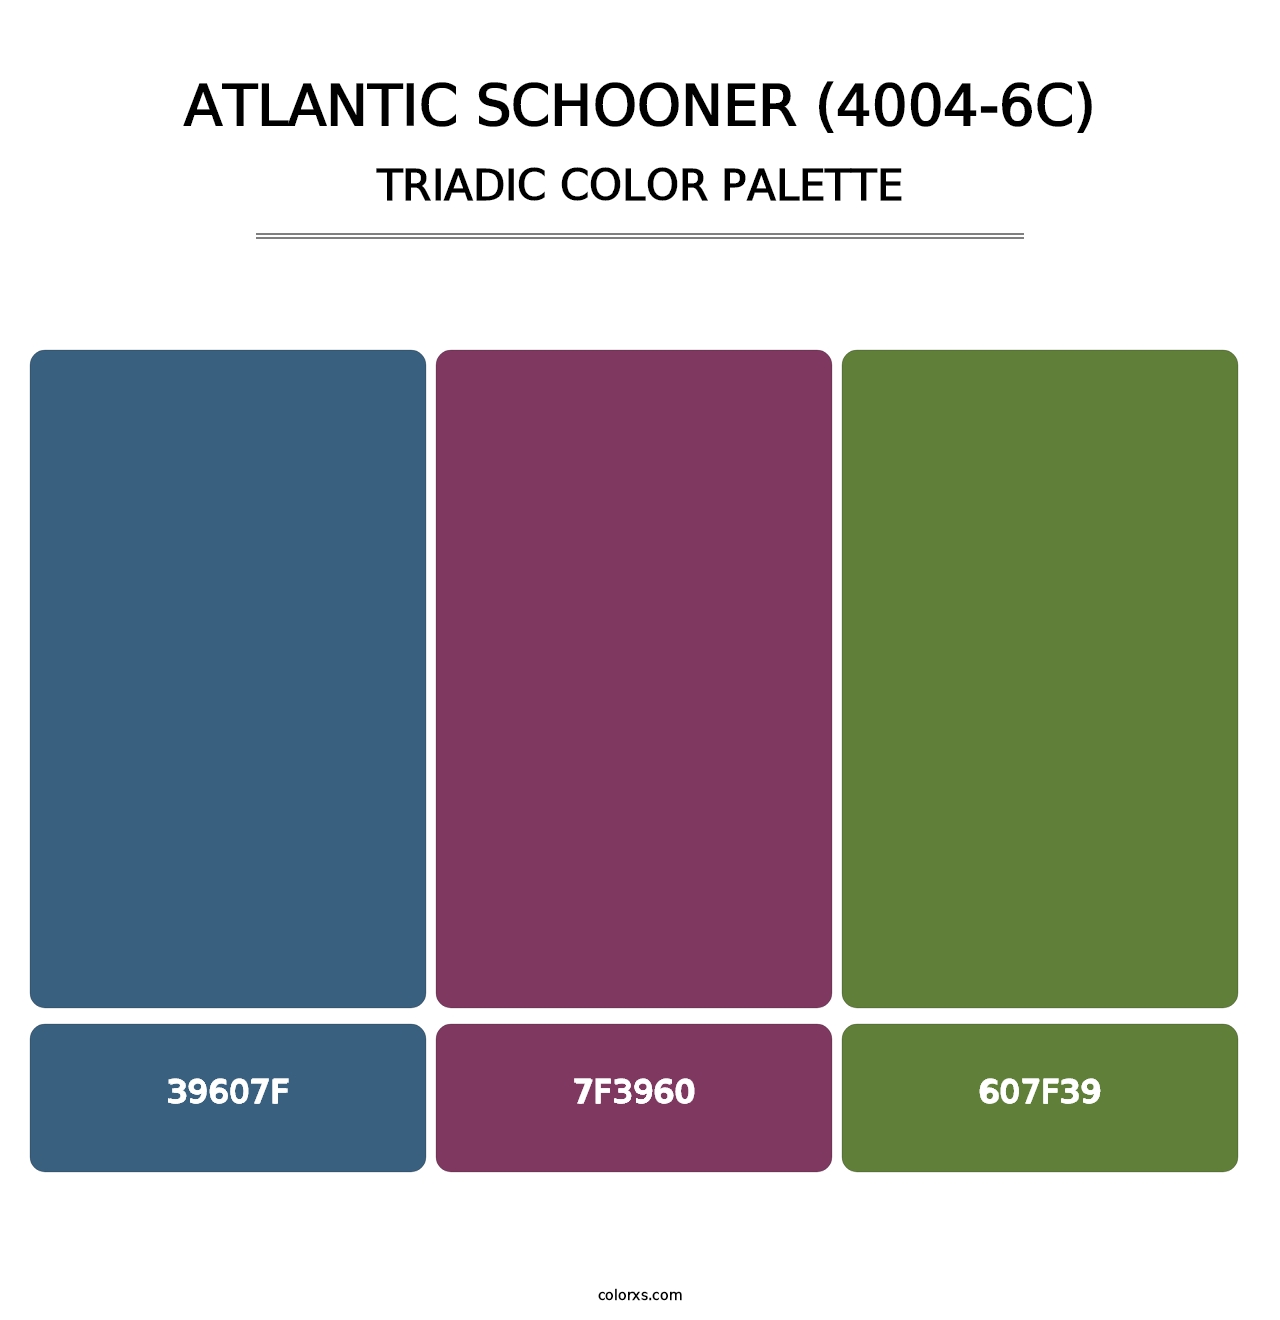 Atlantic Schooner (4004-6C) - Triadic Color Palette